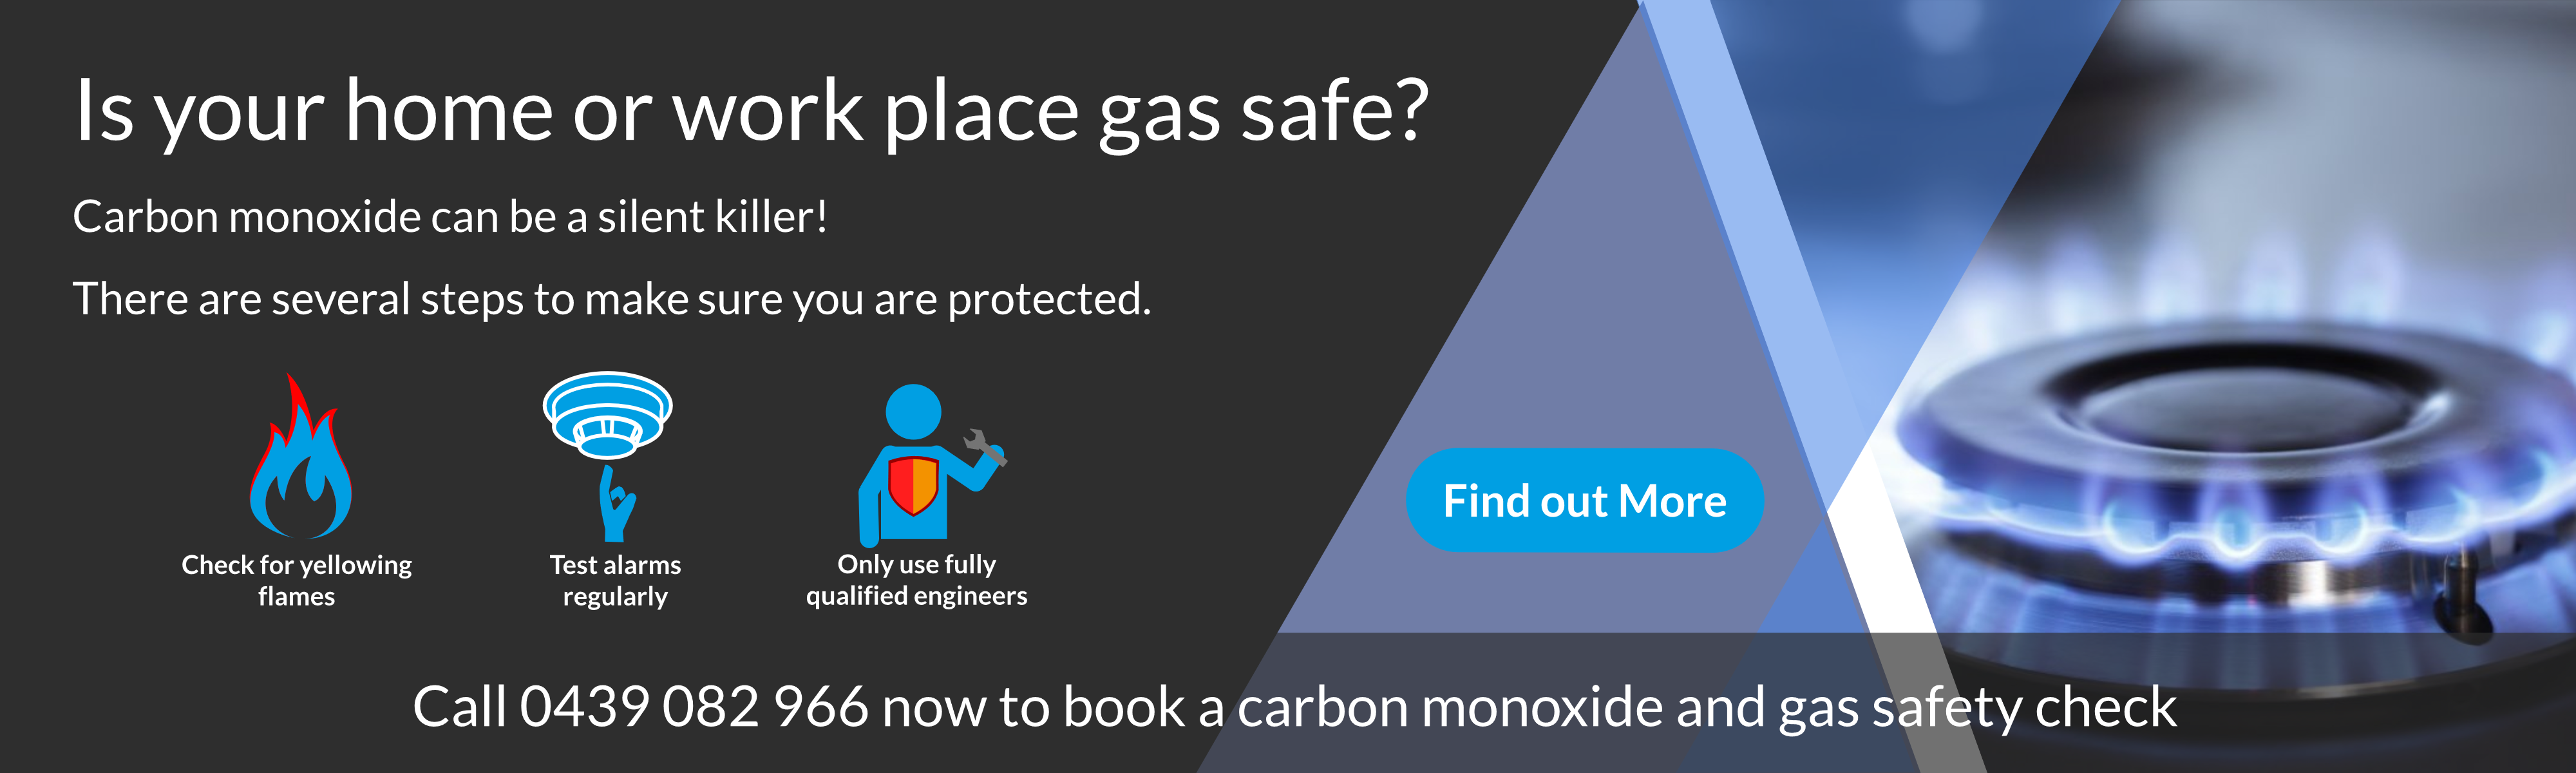 Carbon Monoxide can be a silent killer